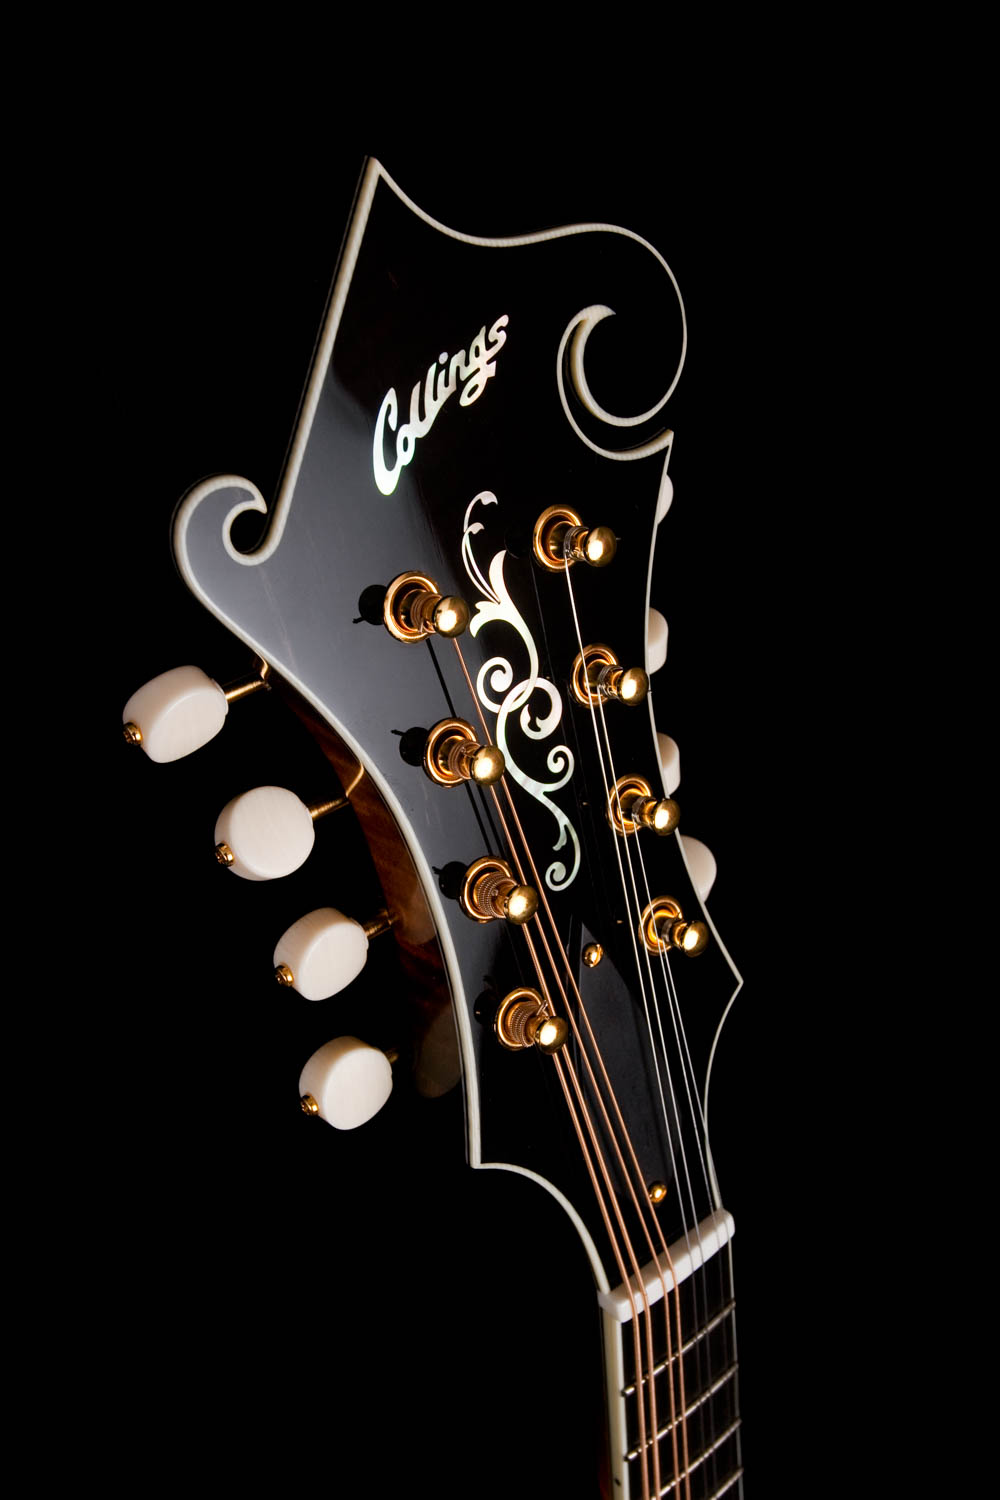 Collings  Custom Handmade Guitars, Mandolins, and Ukuleles